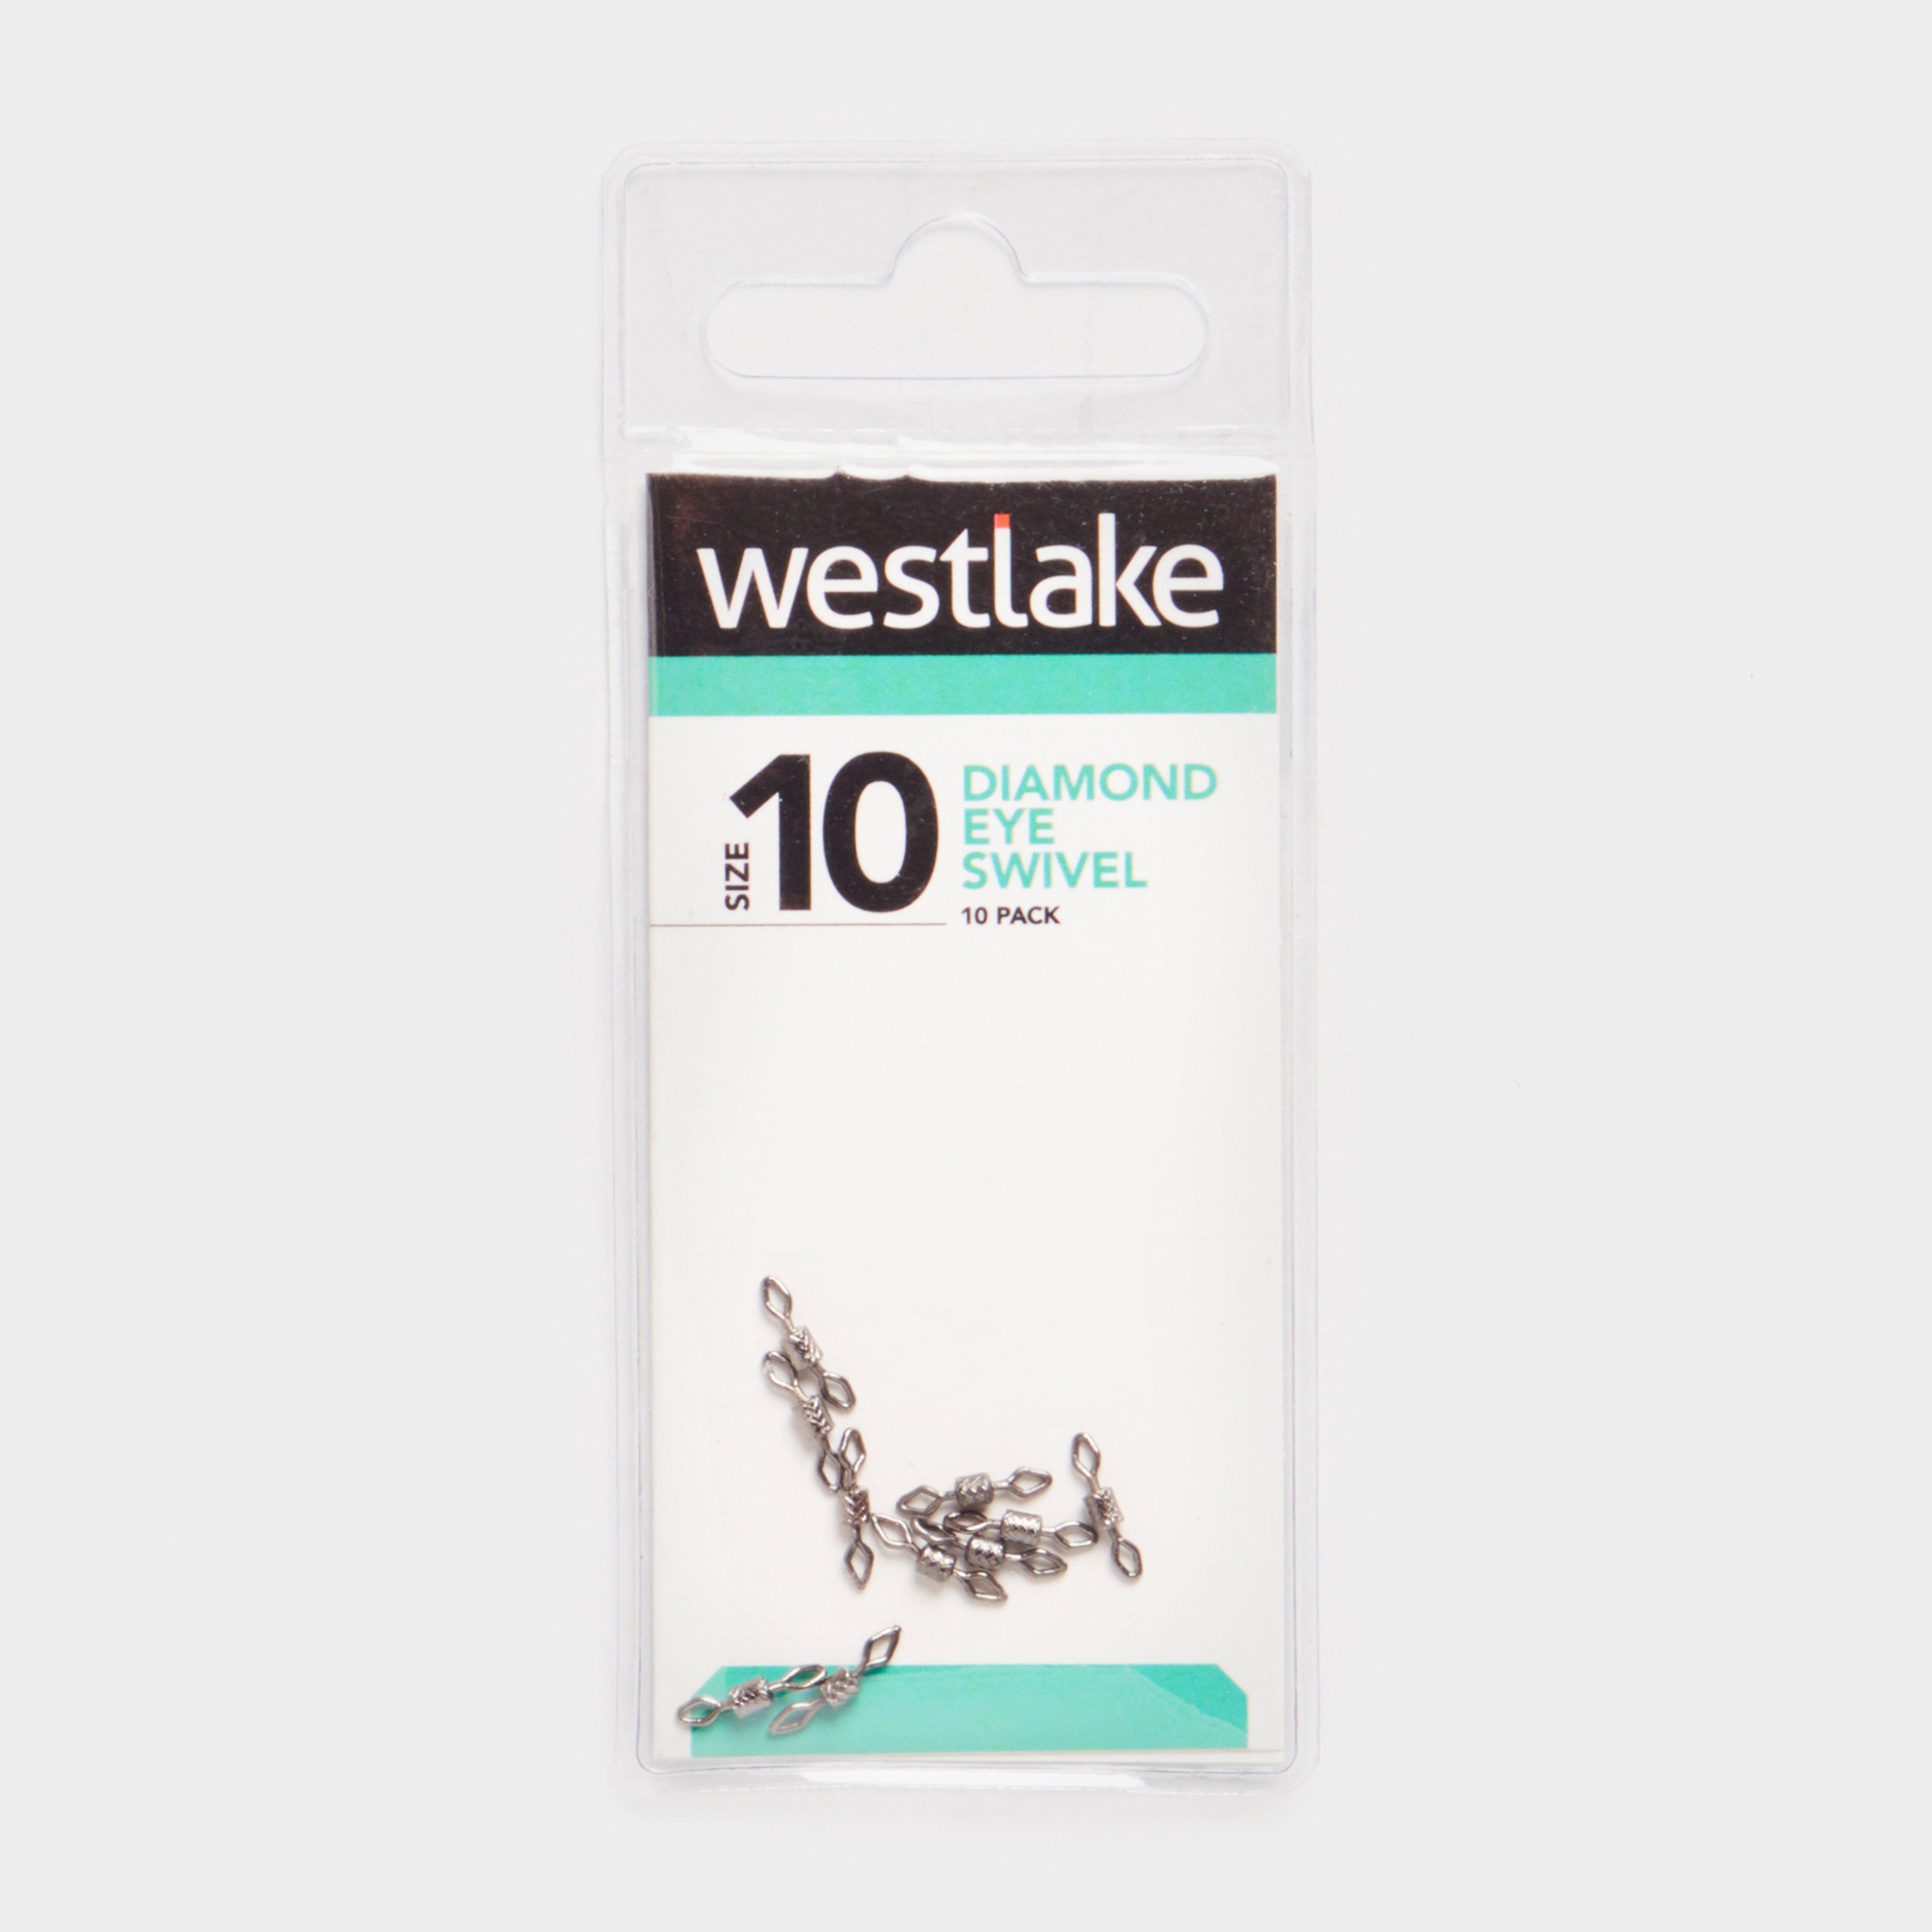 Westlake Diamond Eye Swivel Size10 10pc - Size10/size10  Size10/size10